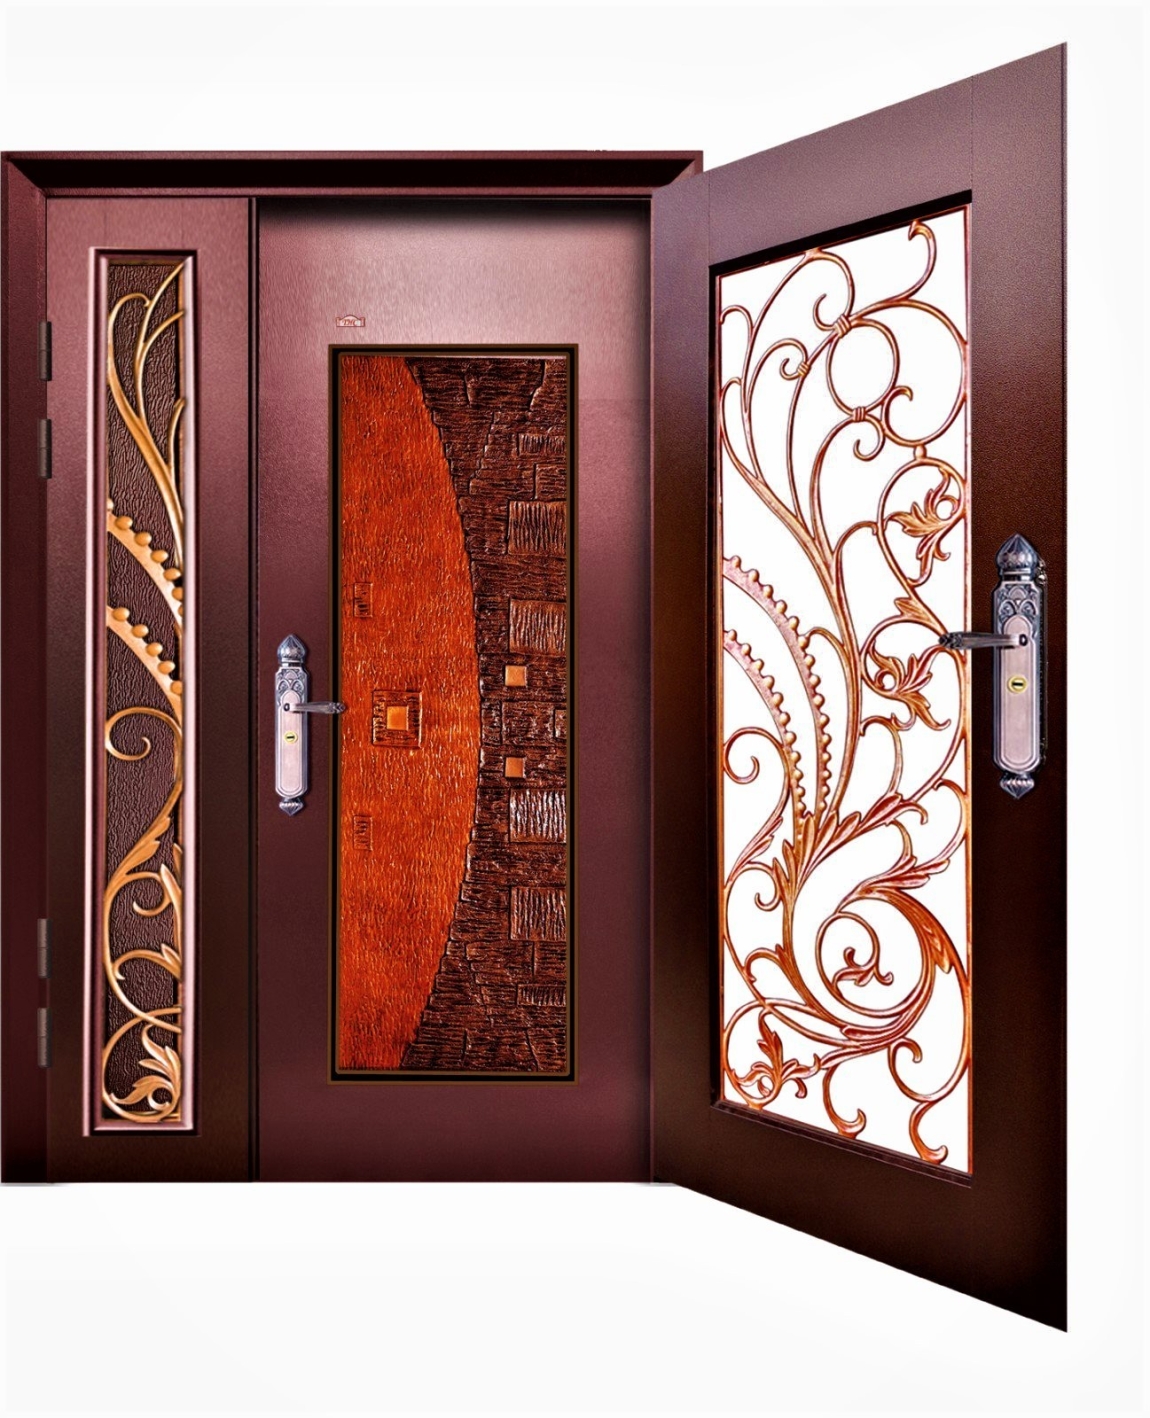 Pintu Keselamatan : PP4-559C-028 Pintu Keselamatan Besar Kecil 2 Lapis 5ft x 7ft Pintu Keselamatan Carta Pilihan Warna Corak